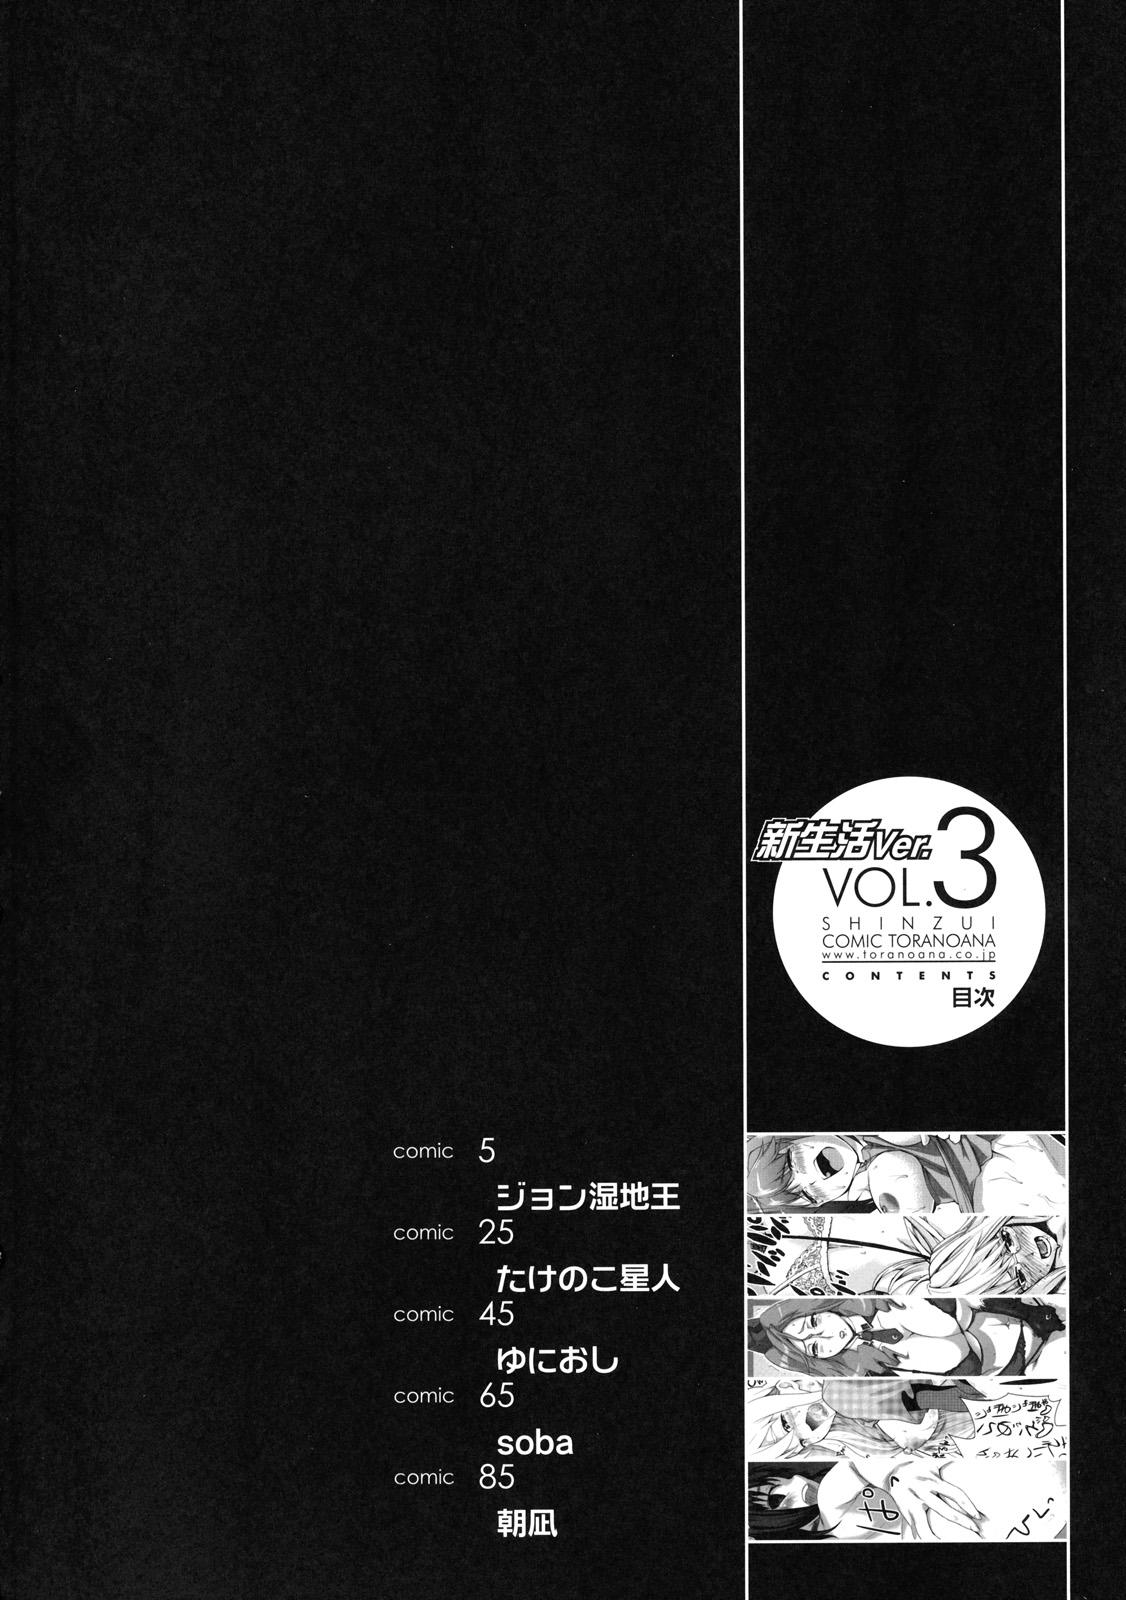 Shinzui Shinseikatsu Ver. Vol. 3 2